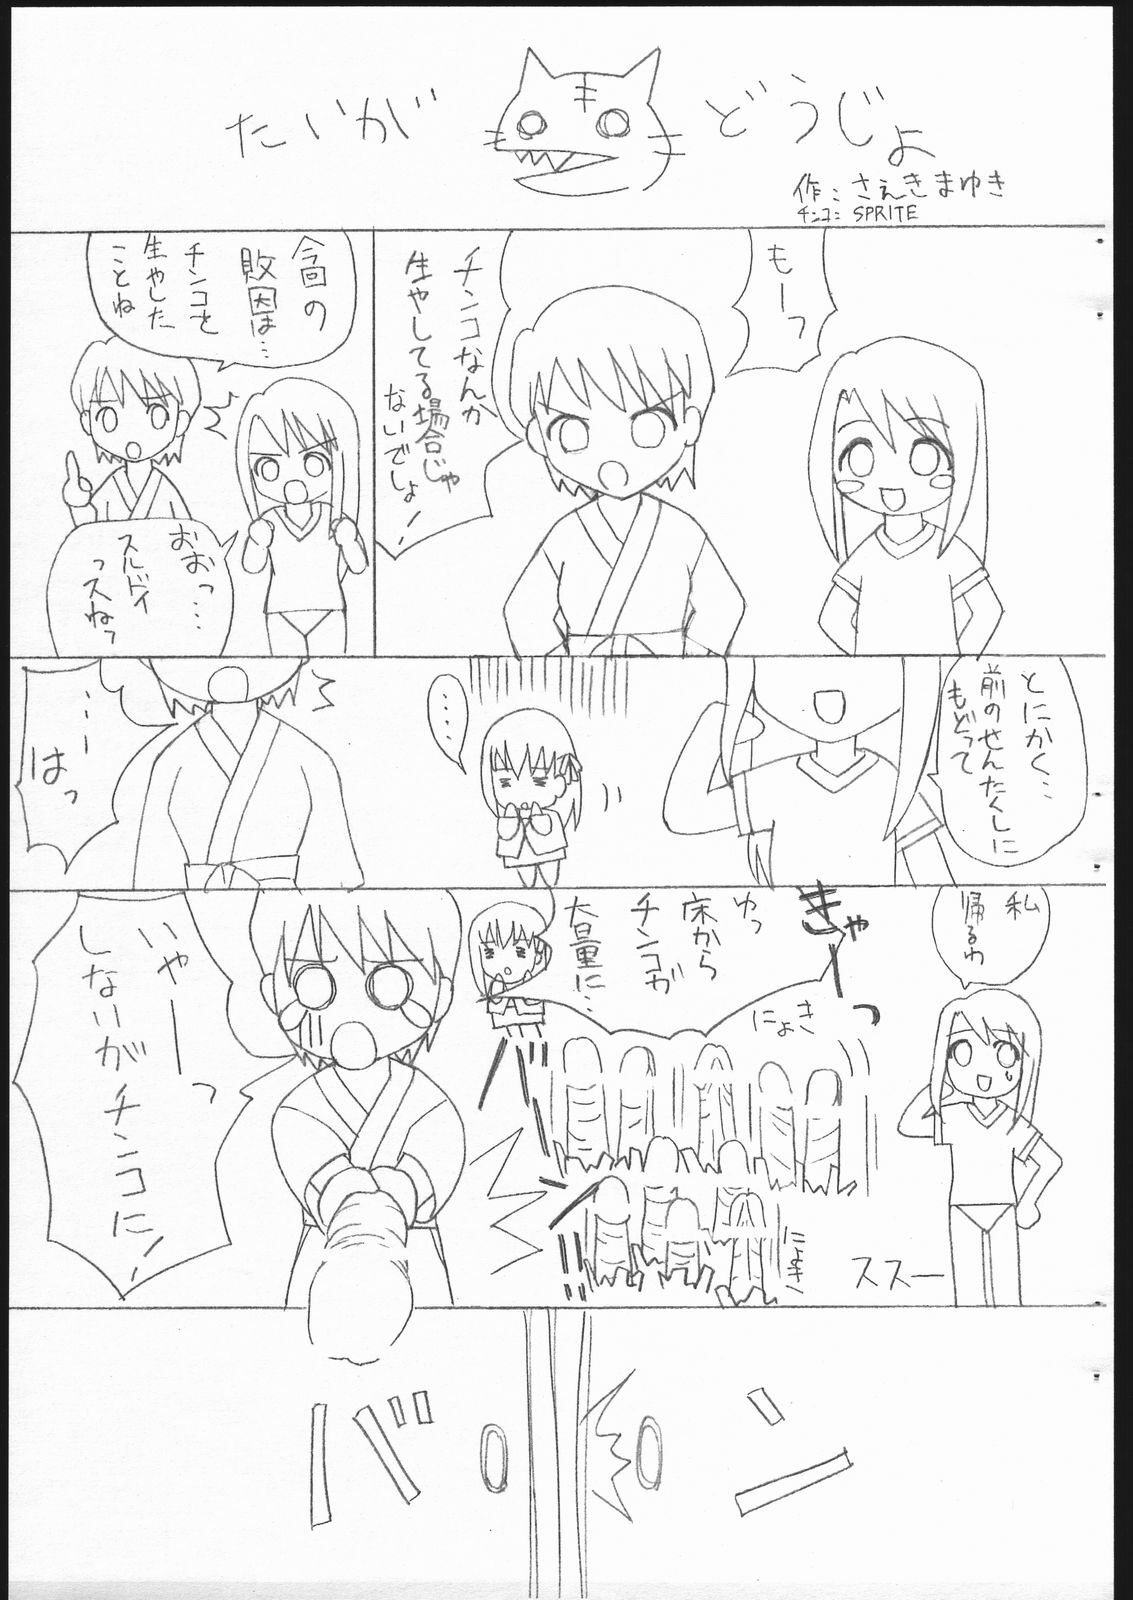 [Sprite] Fate/Sutei Inu Ai Do (Fate/Stay Night) page 23 full